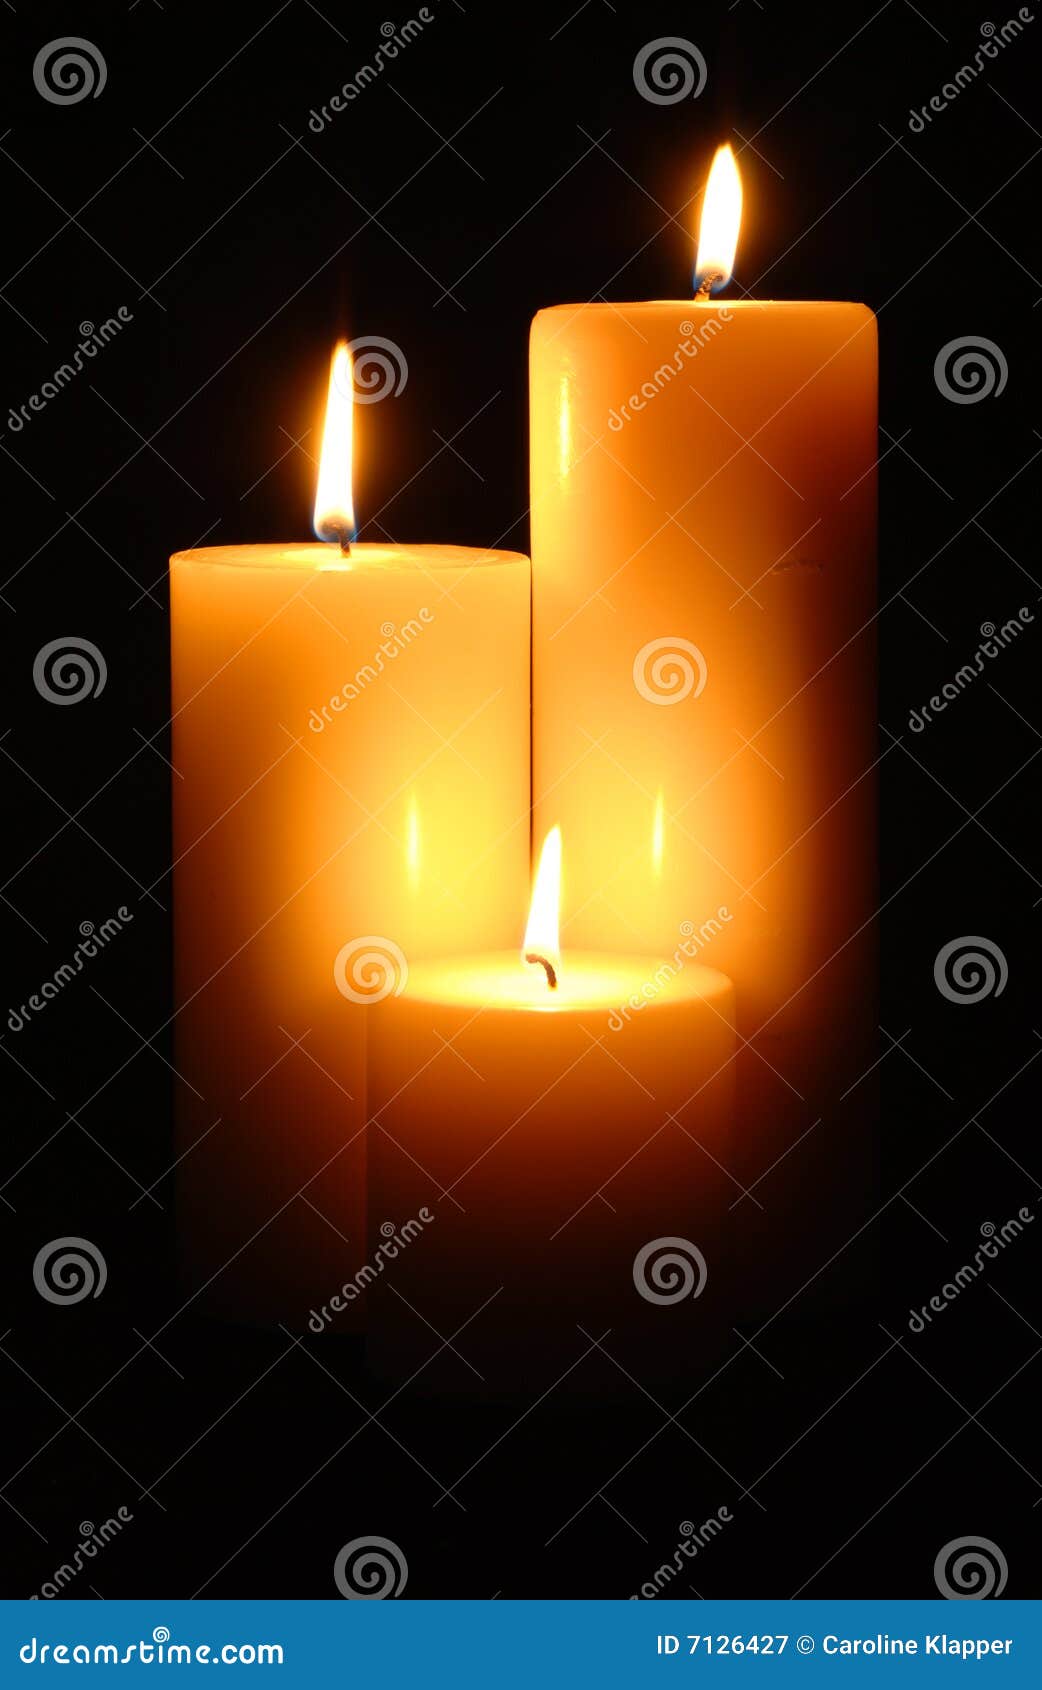 Candle Illumination stock image. Image of levels, orange - 7126427